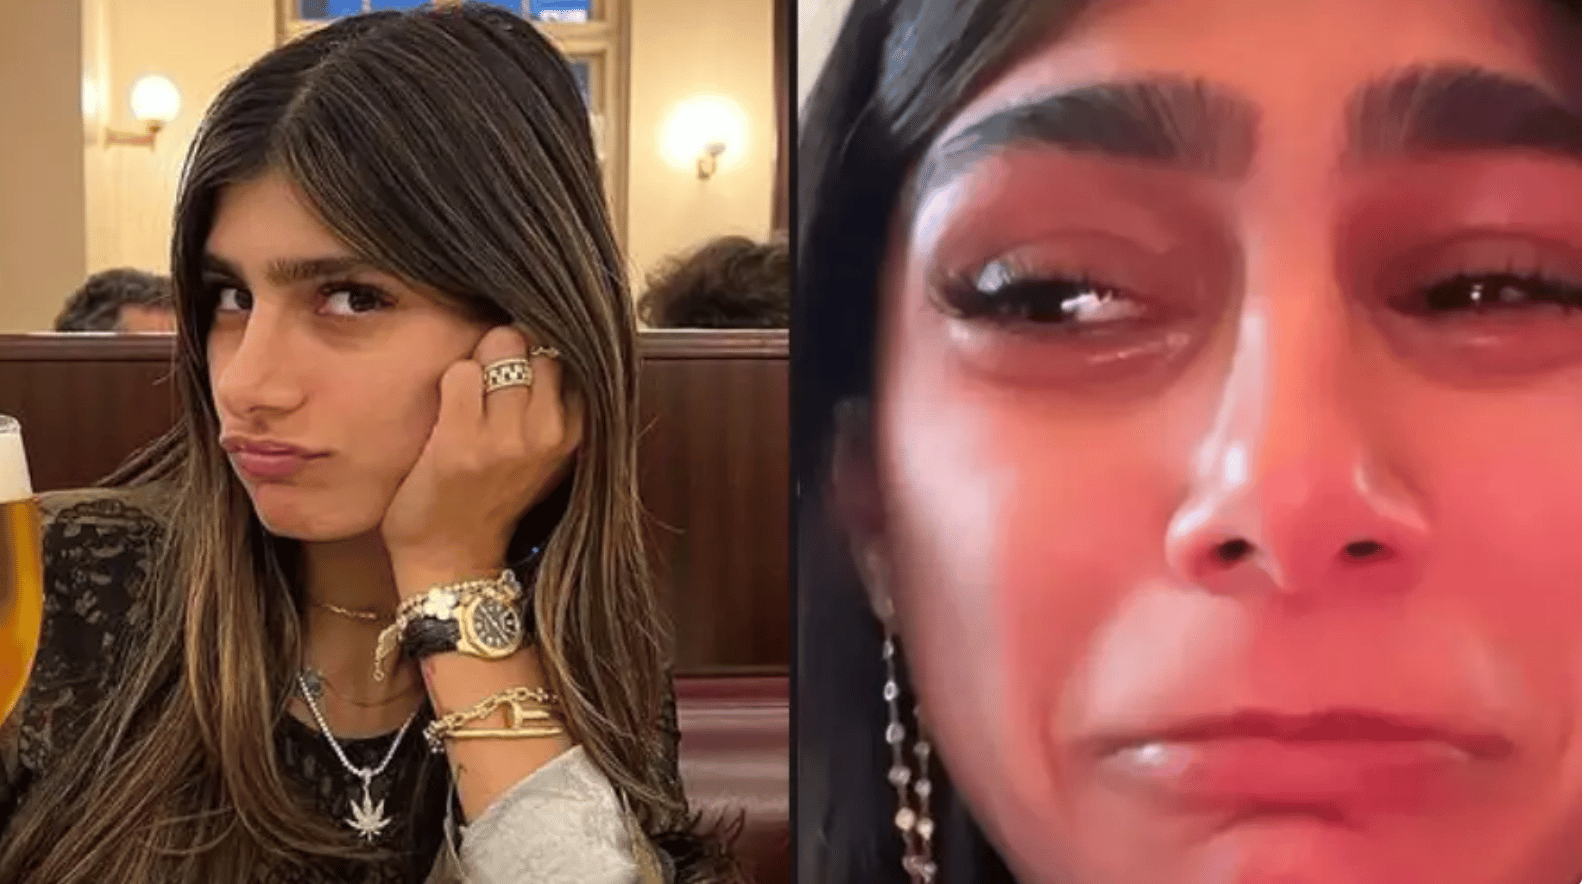 Mia Khalifa Breaks Down In Tears After Fan’s Girlfriend Insults Her